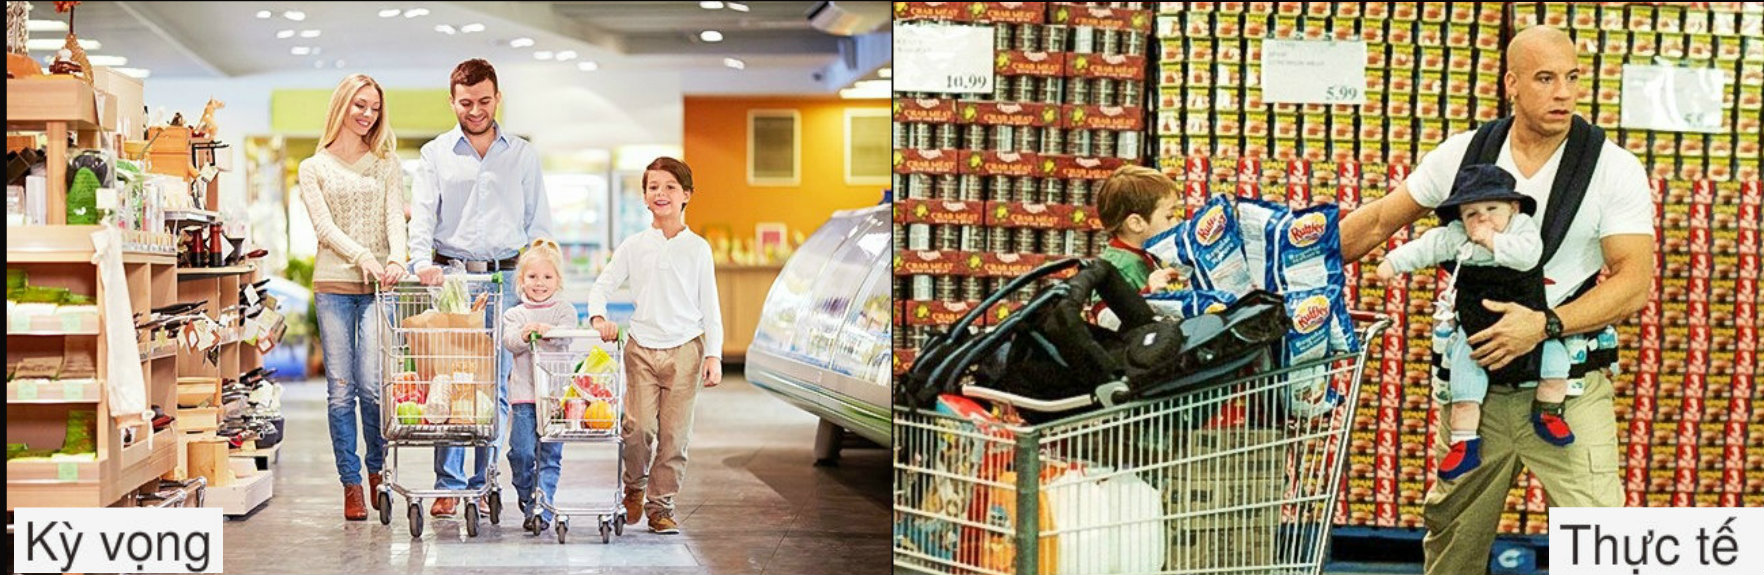 Cả nhà vui vẻ đi siêu thị có nghĩa là bạn sẽ đẩy bọn trẻ trong xe nếu muốn mua được đúng và đủ số thực phẩm bạn muốn